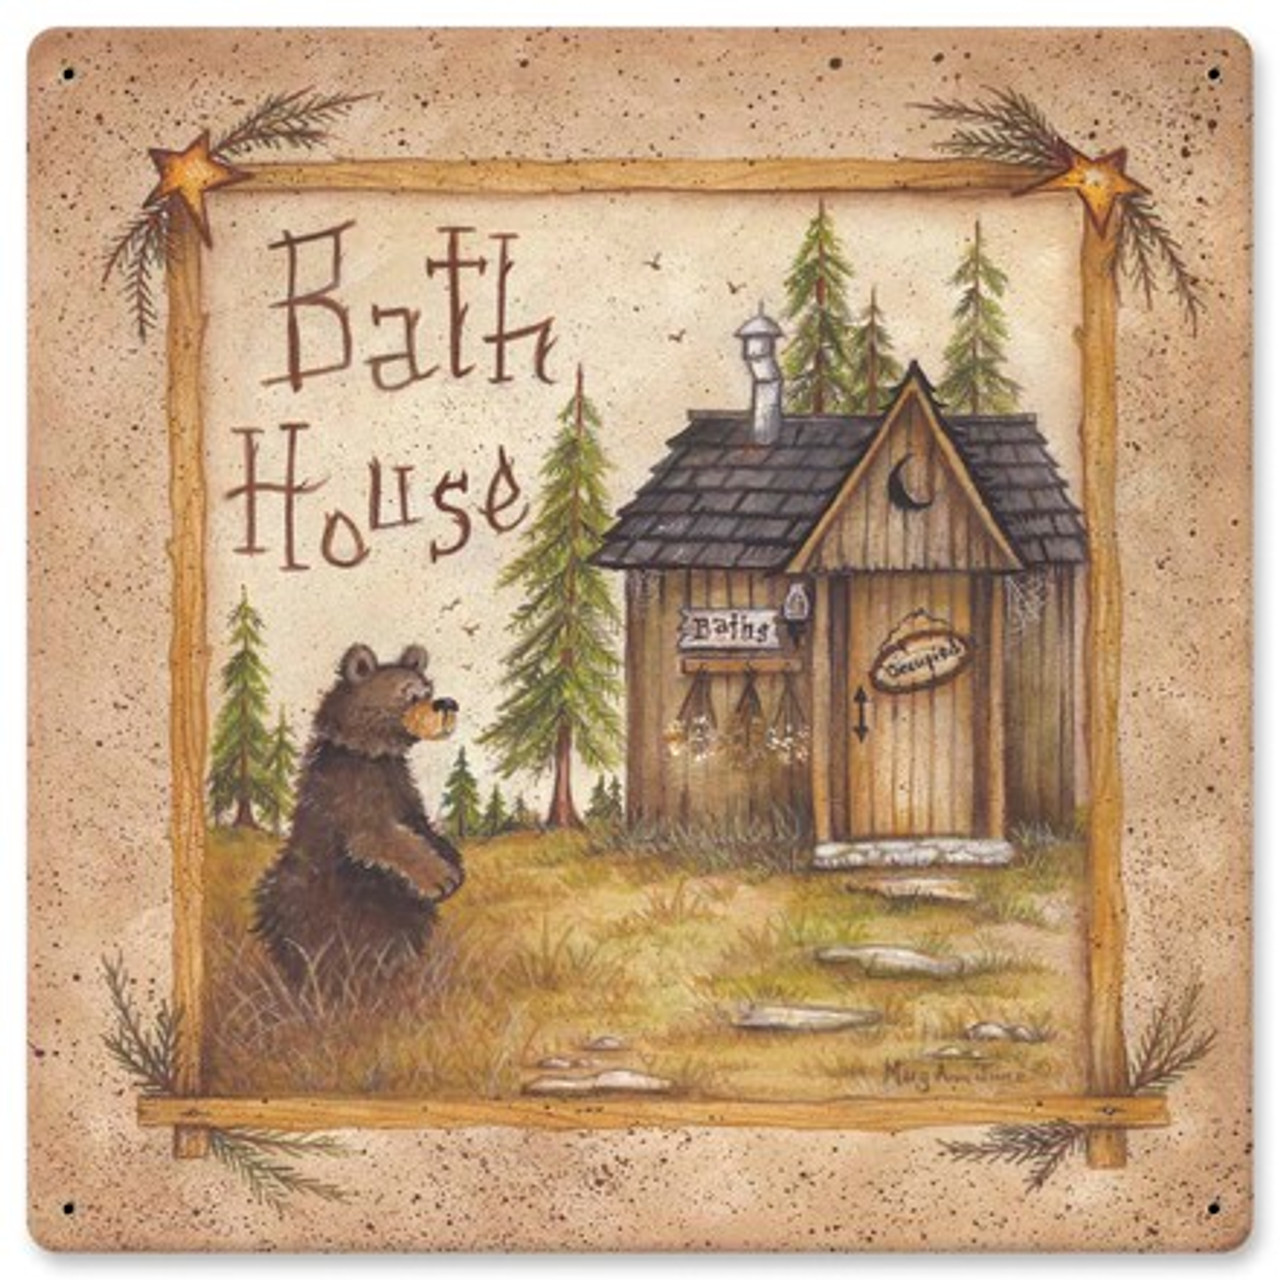 Bath House Bear Metal Sign 12 x 12 Inches